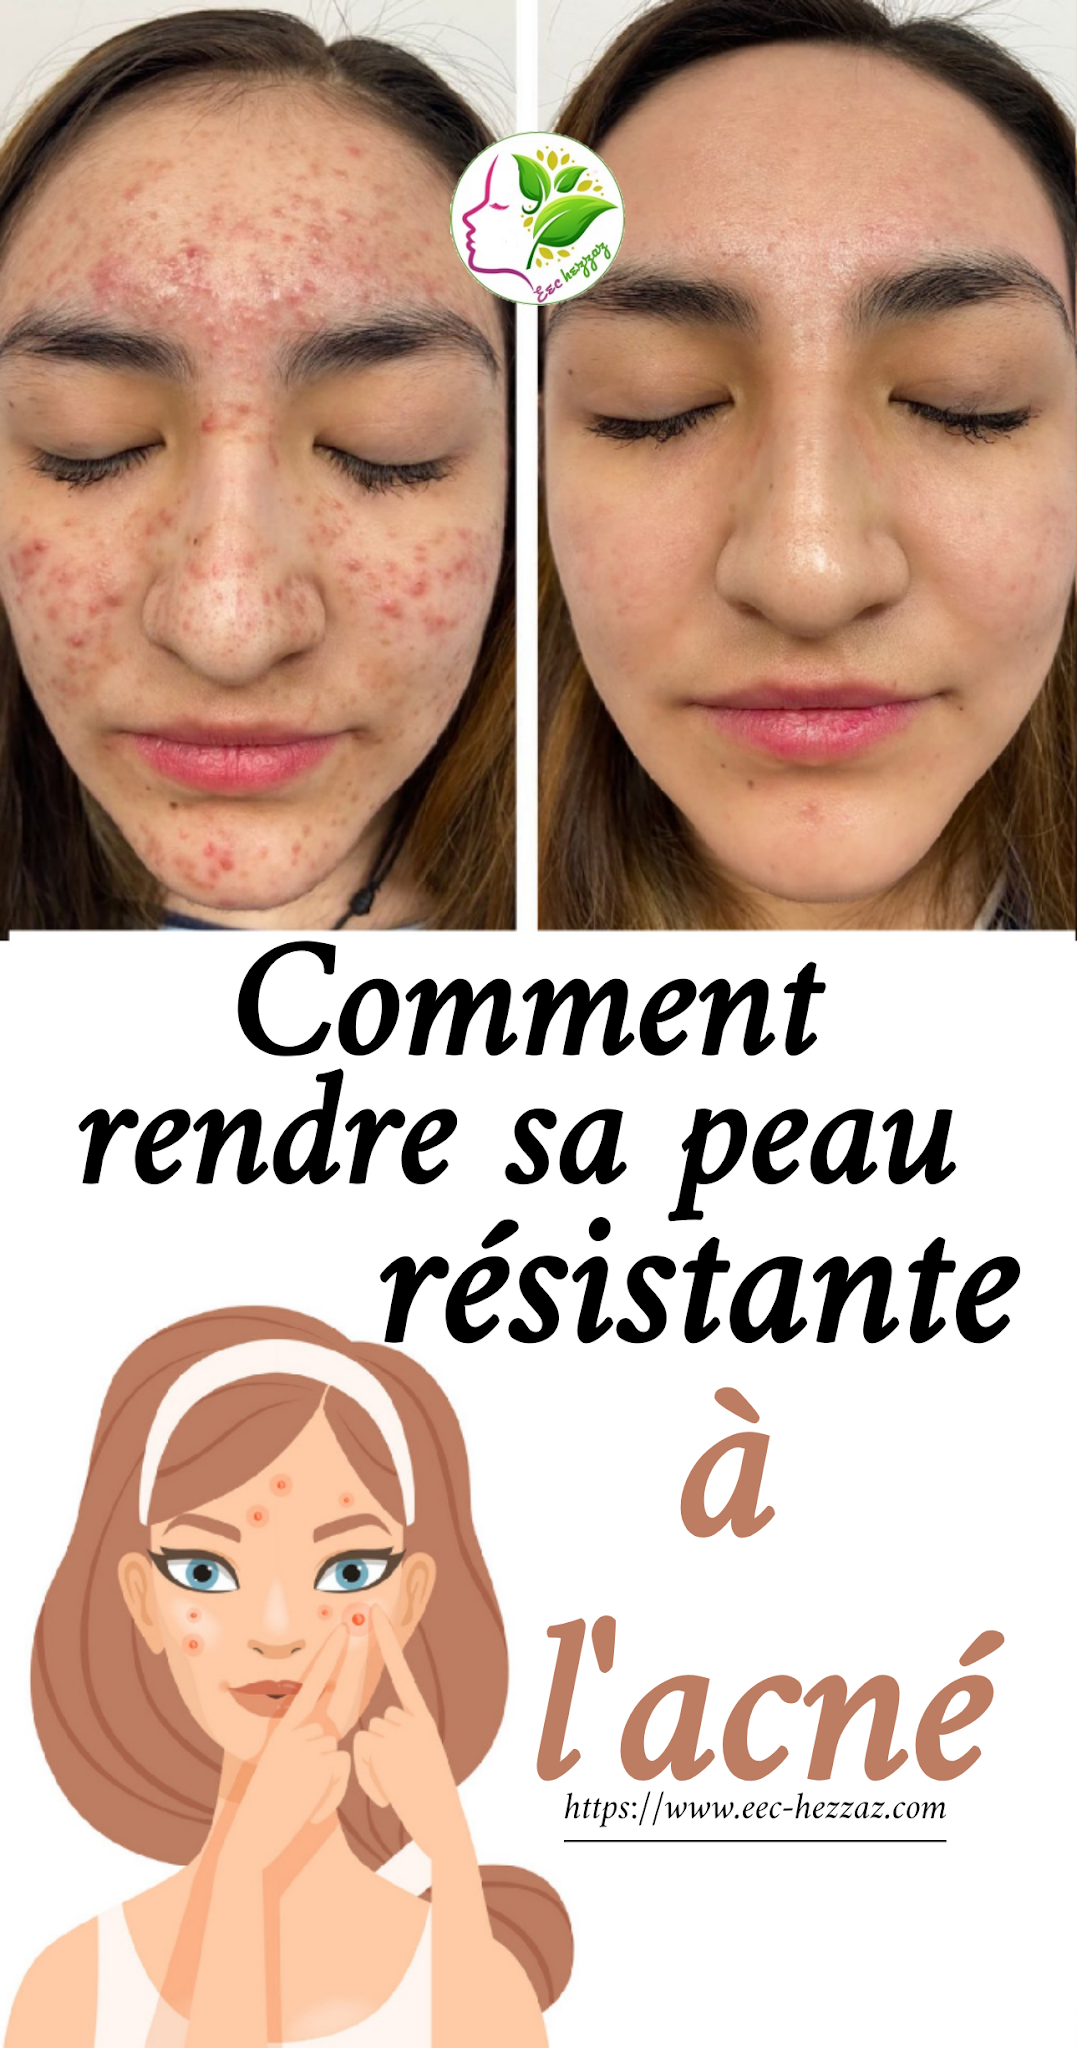 Comment rendre sa peau résistante à l'acné